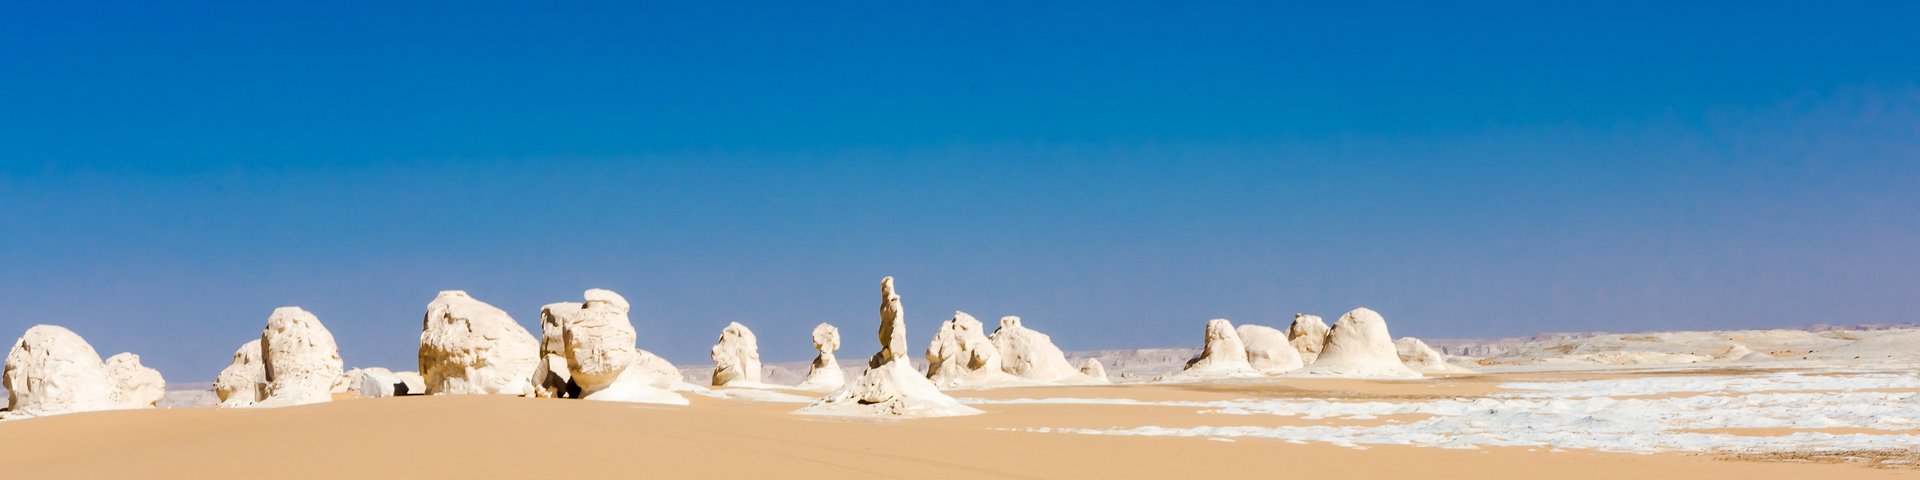 Landschaftsbild Weisse Wüste